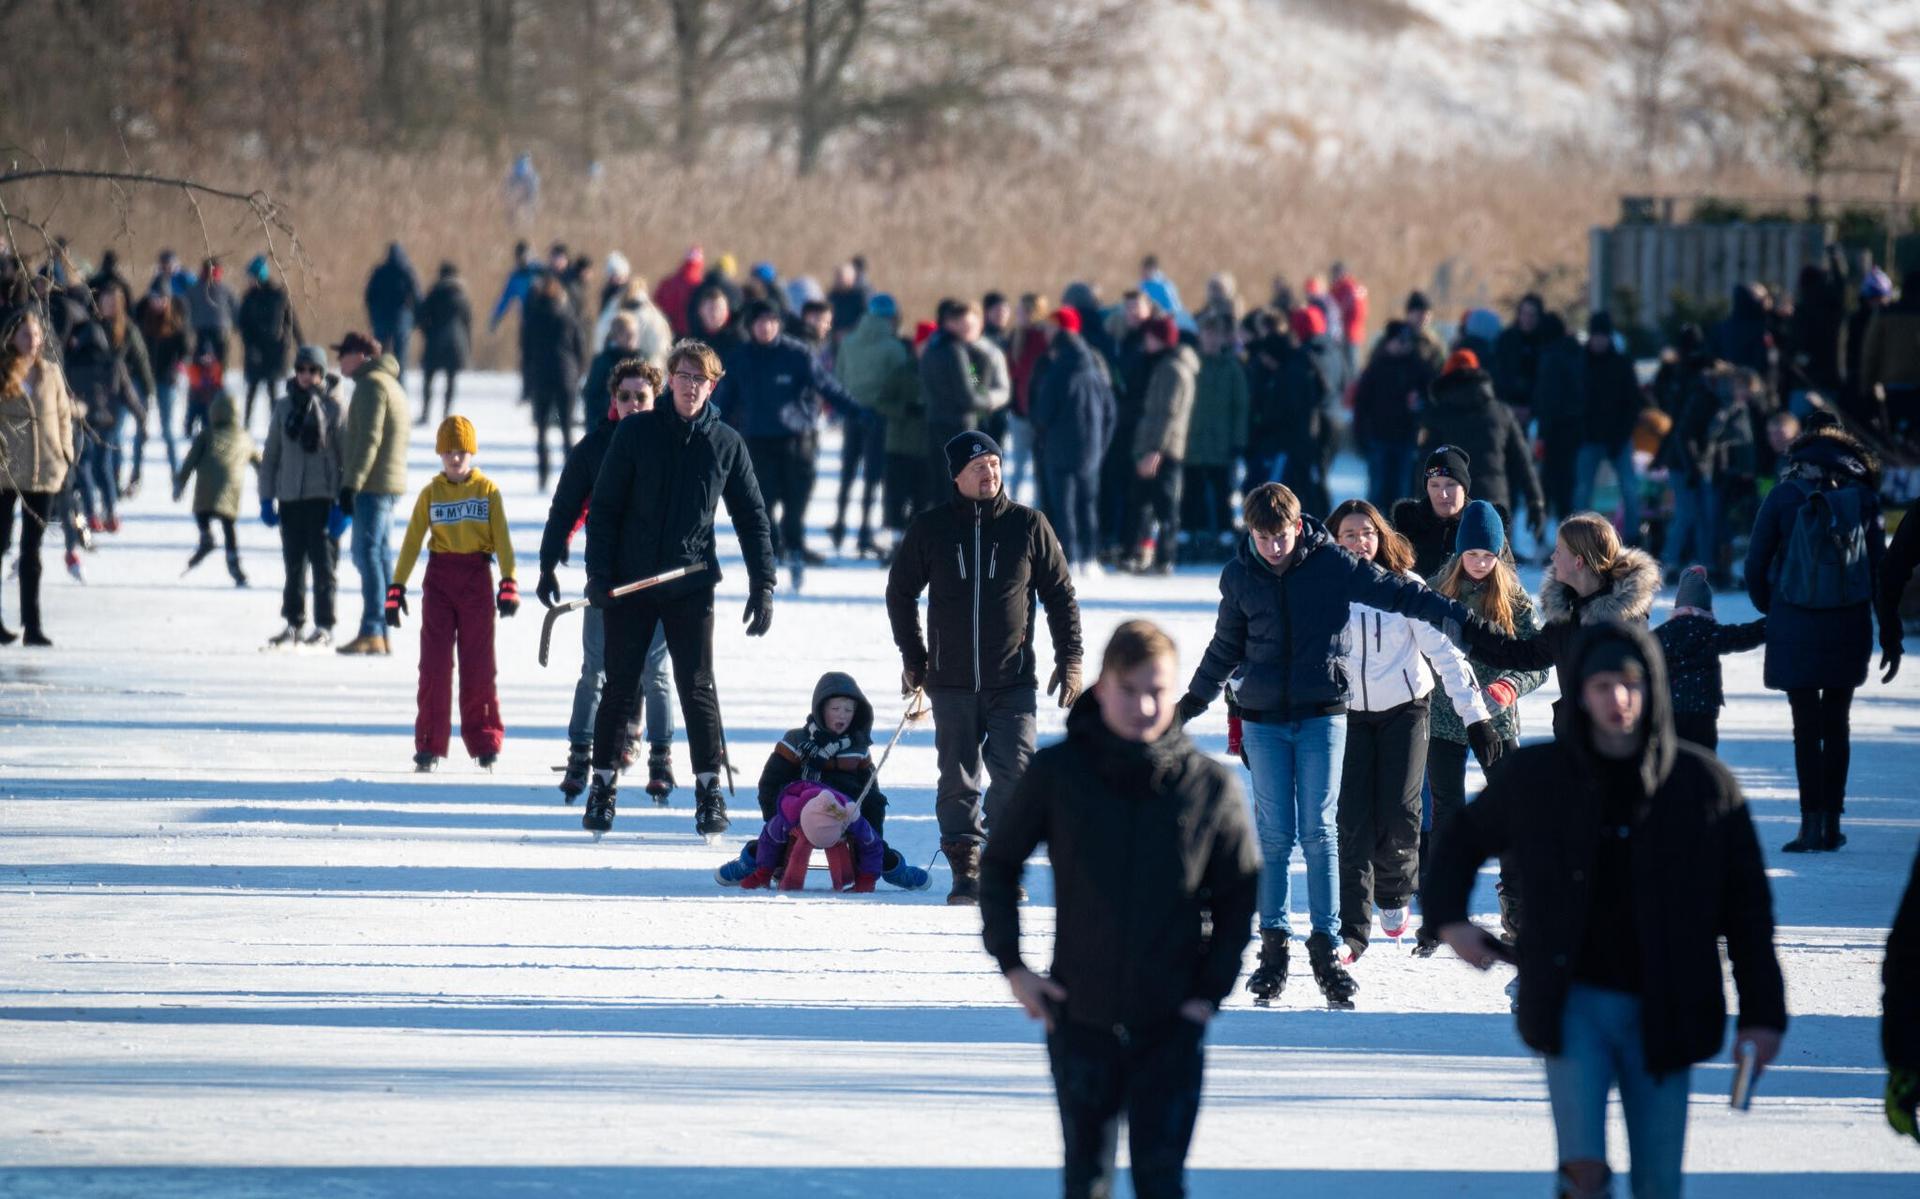 WOLVEGA - Honderden mensen zijn het ijs opgestapt in de Lindewijk in Wolvega om het ijs te testen. Het ijs ligt er volgens de schaatsers goed bij.